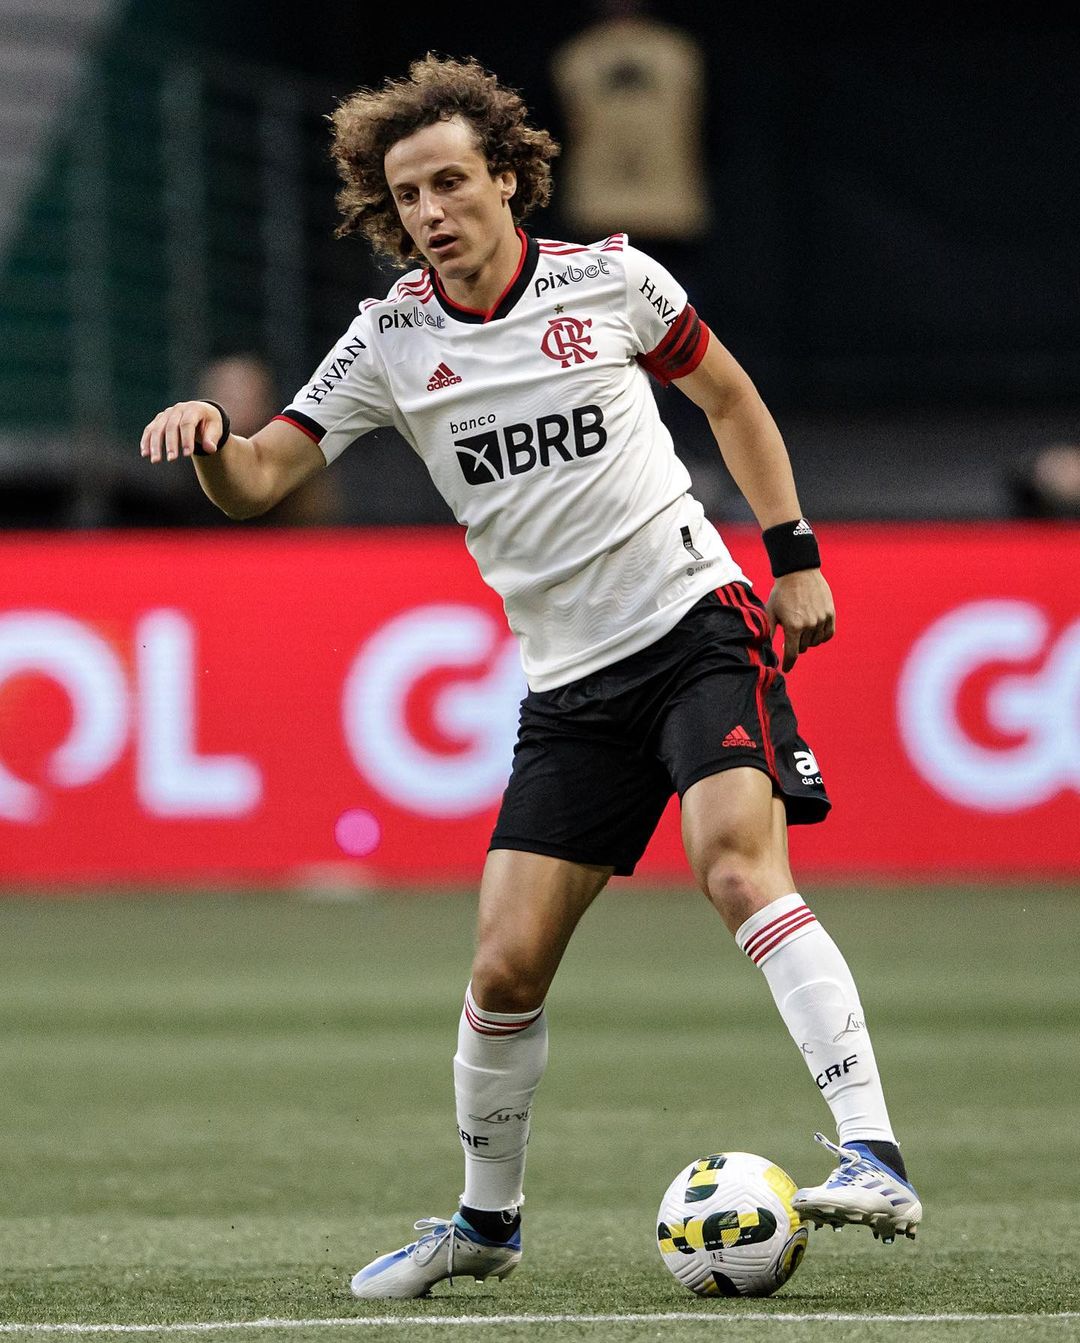 David Luiz In The Field (Source: Instagram)